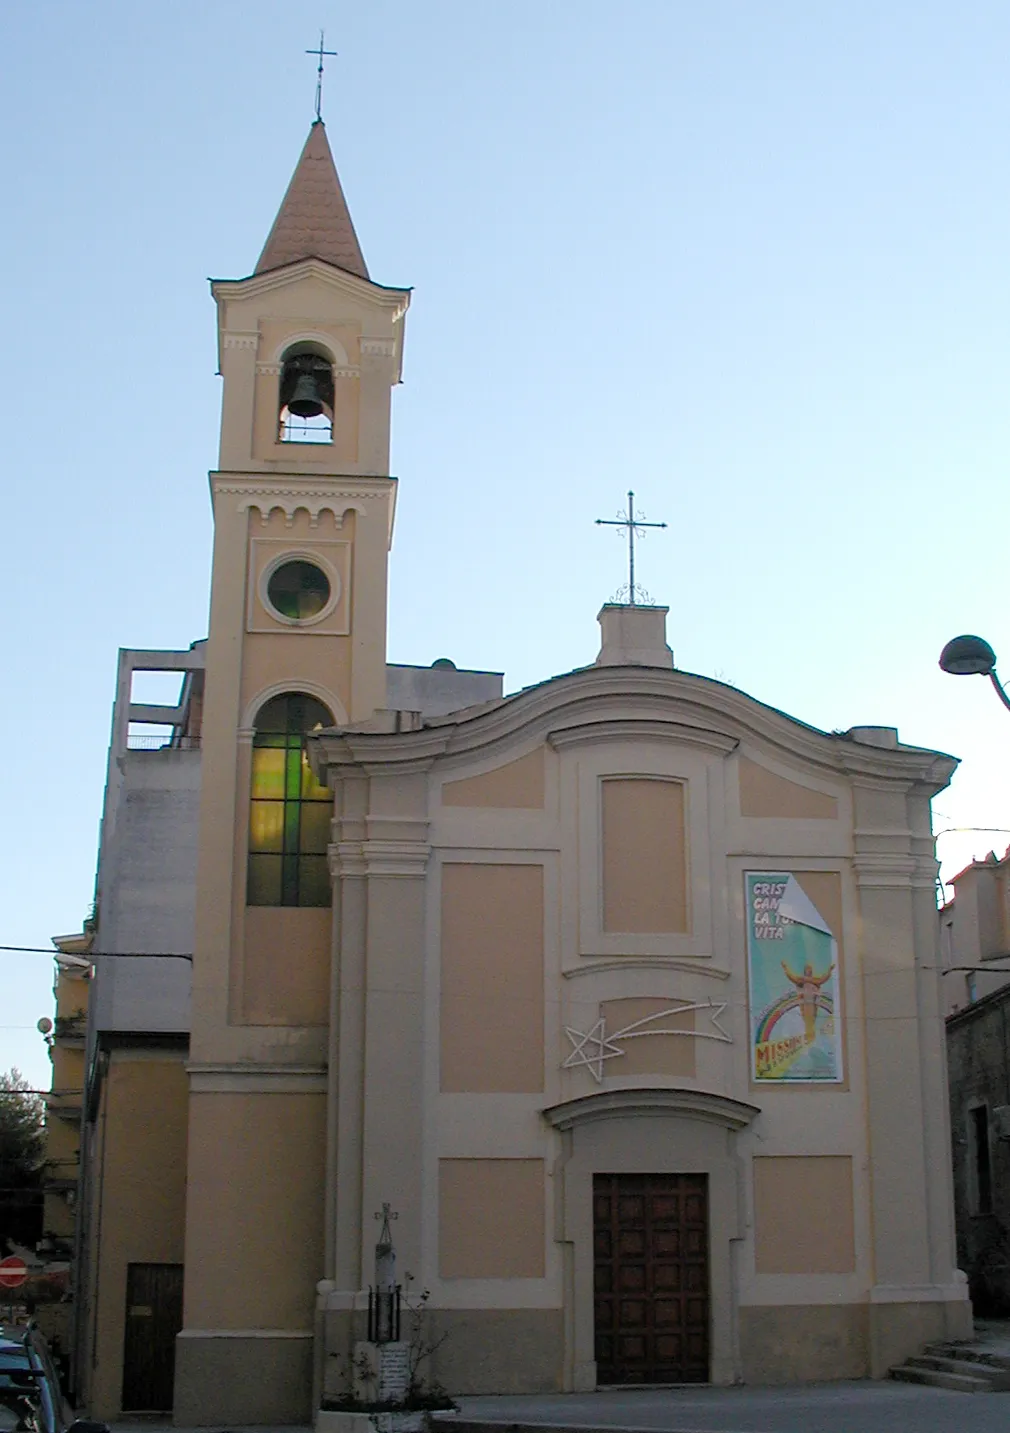 Bild von Abruzzo